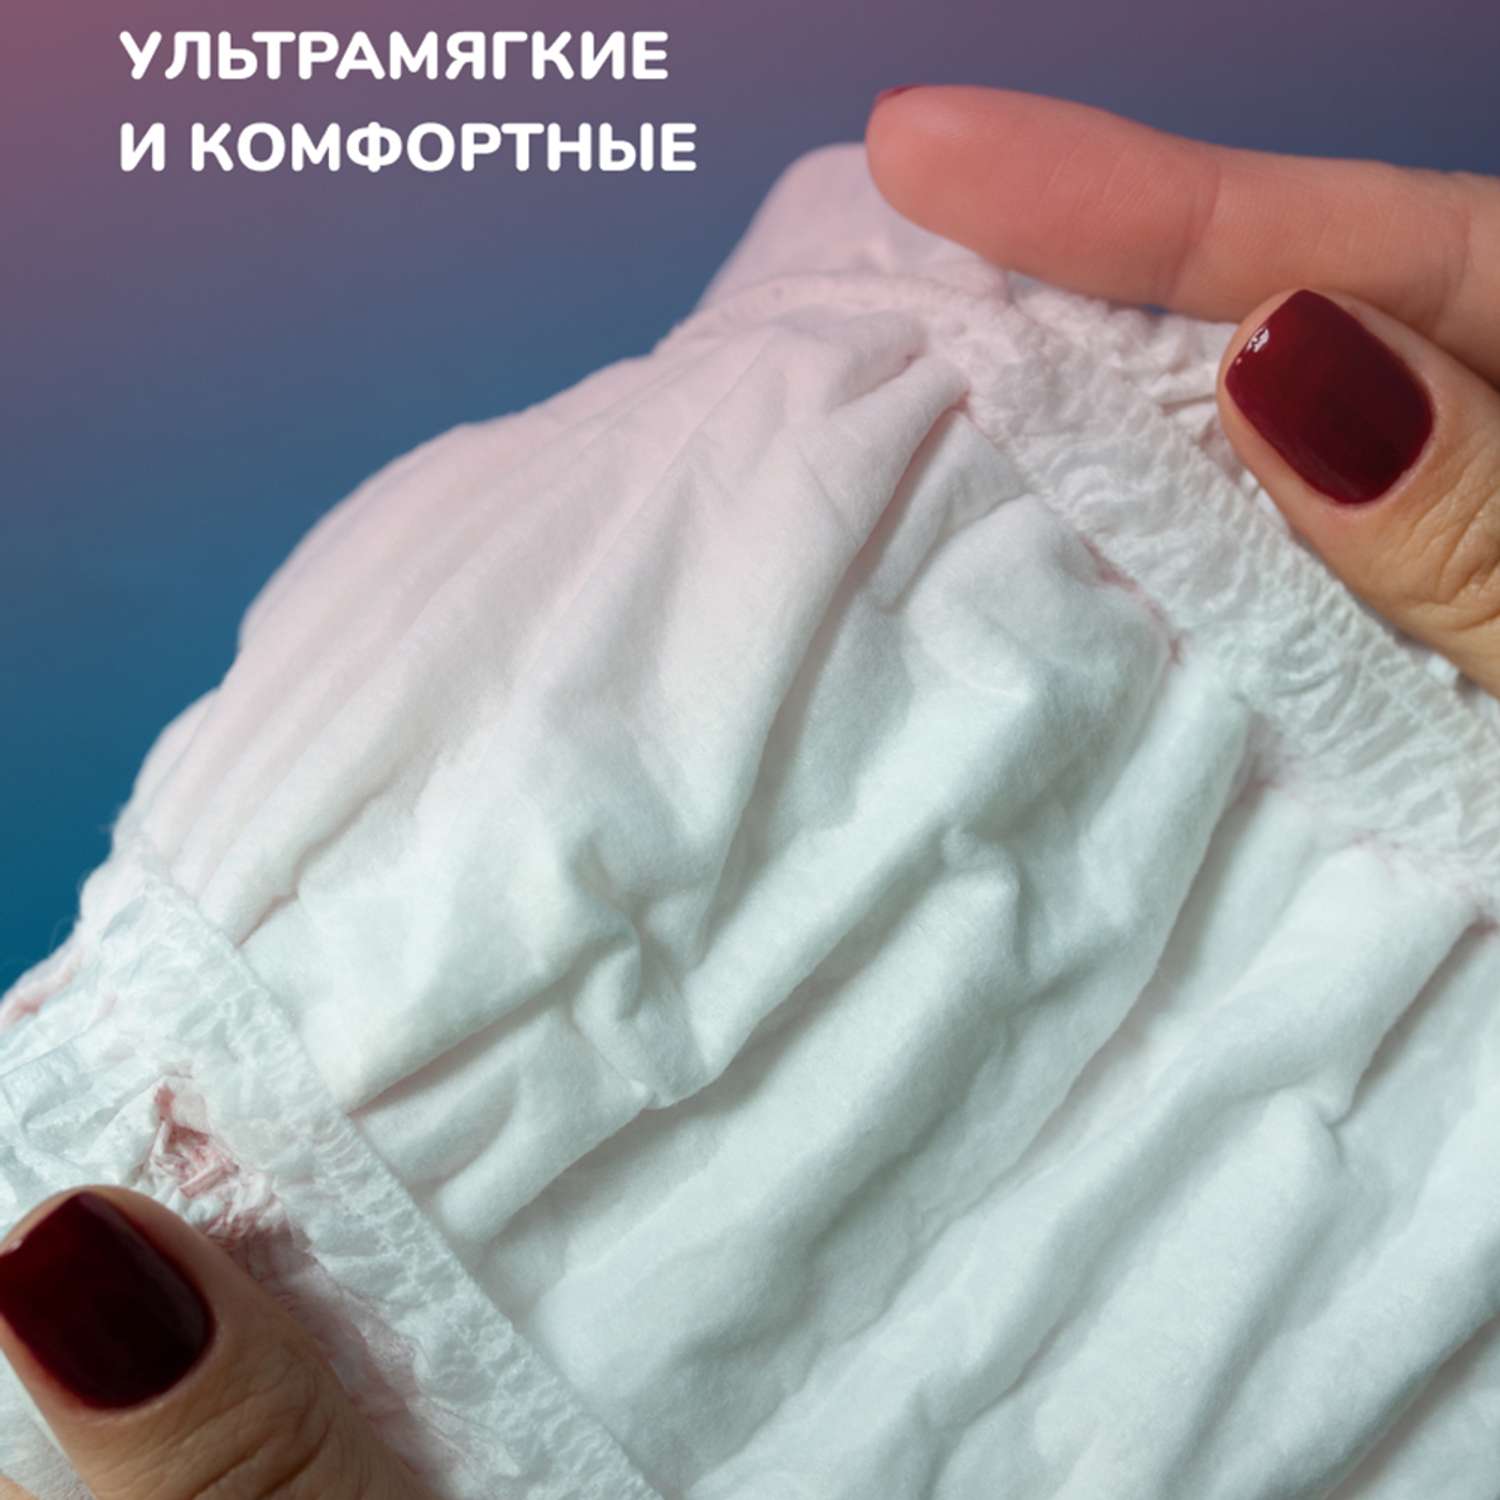 Трусы женские одноразовые Dr.Skipp послеродовые менструальные размер L 2 упаковки по 3 шт - фото 6